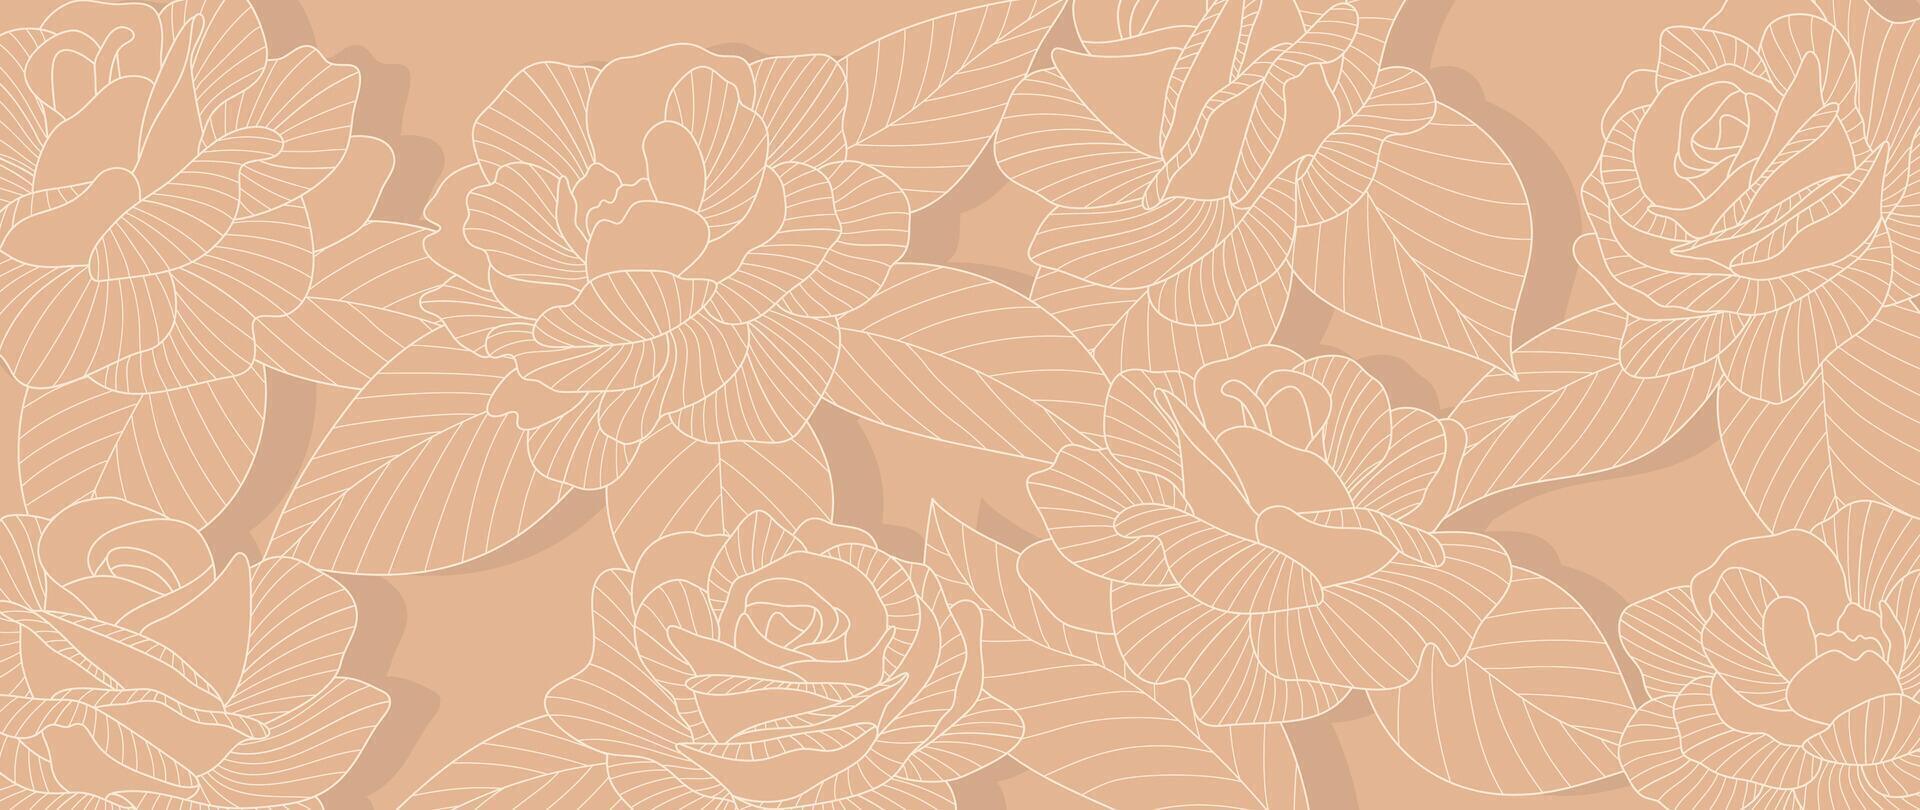 lusso rosa fiore linea arte sfondo vettore. naturale botanico elegante fiore con bianca linea arte. design illustrazione per decorazione, parete arredamento, sfondo, coperchio, striscione, manifesto, carta. vettore